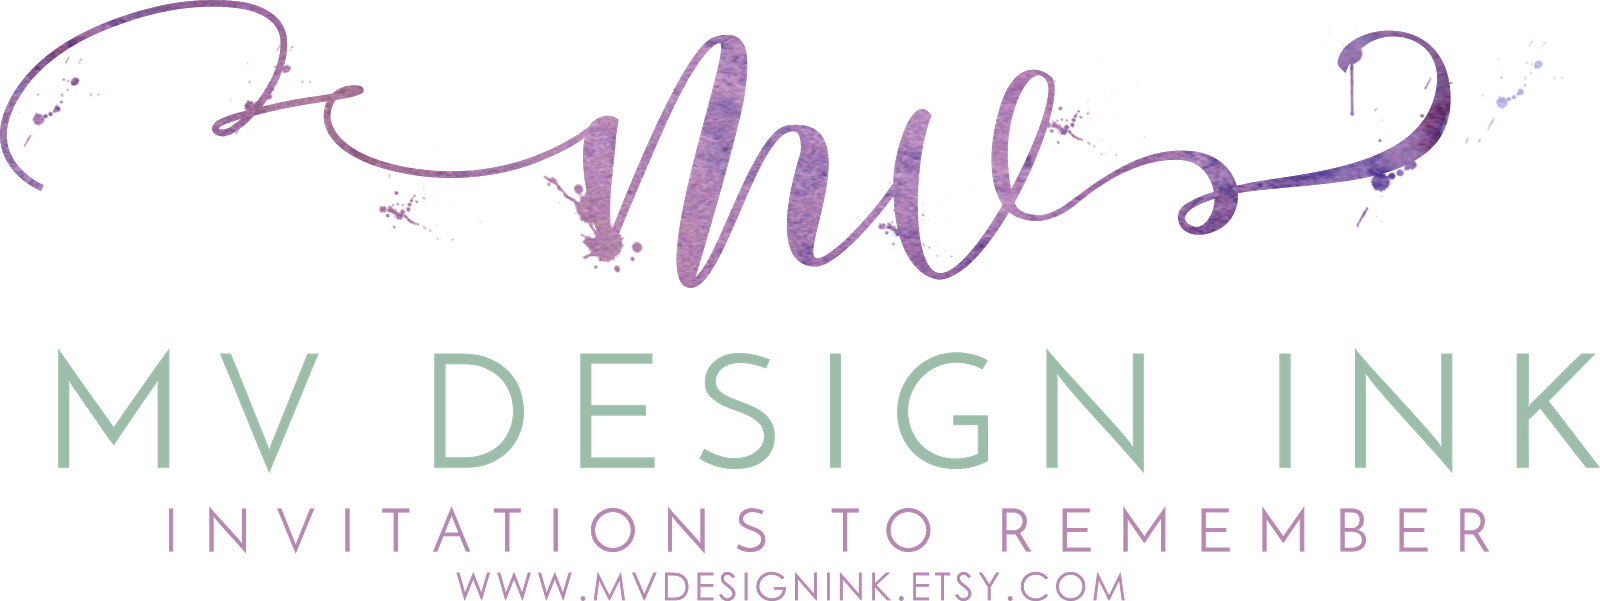 MV Design Ink